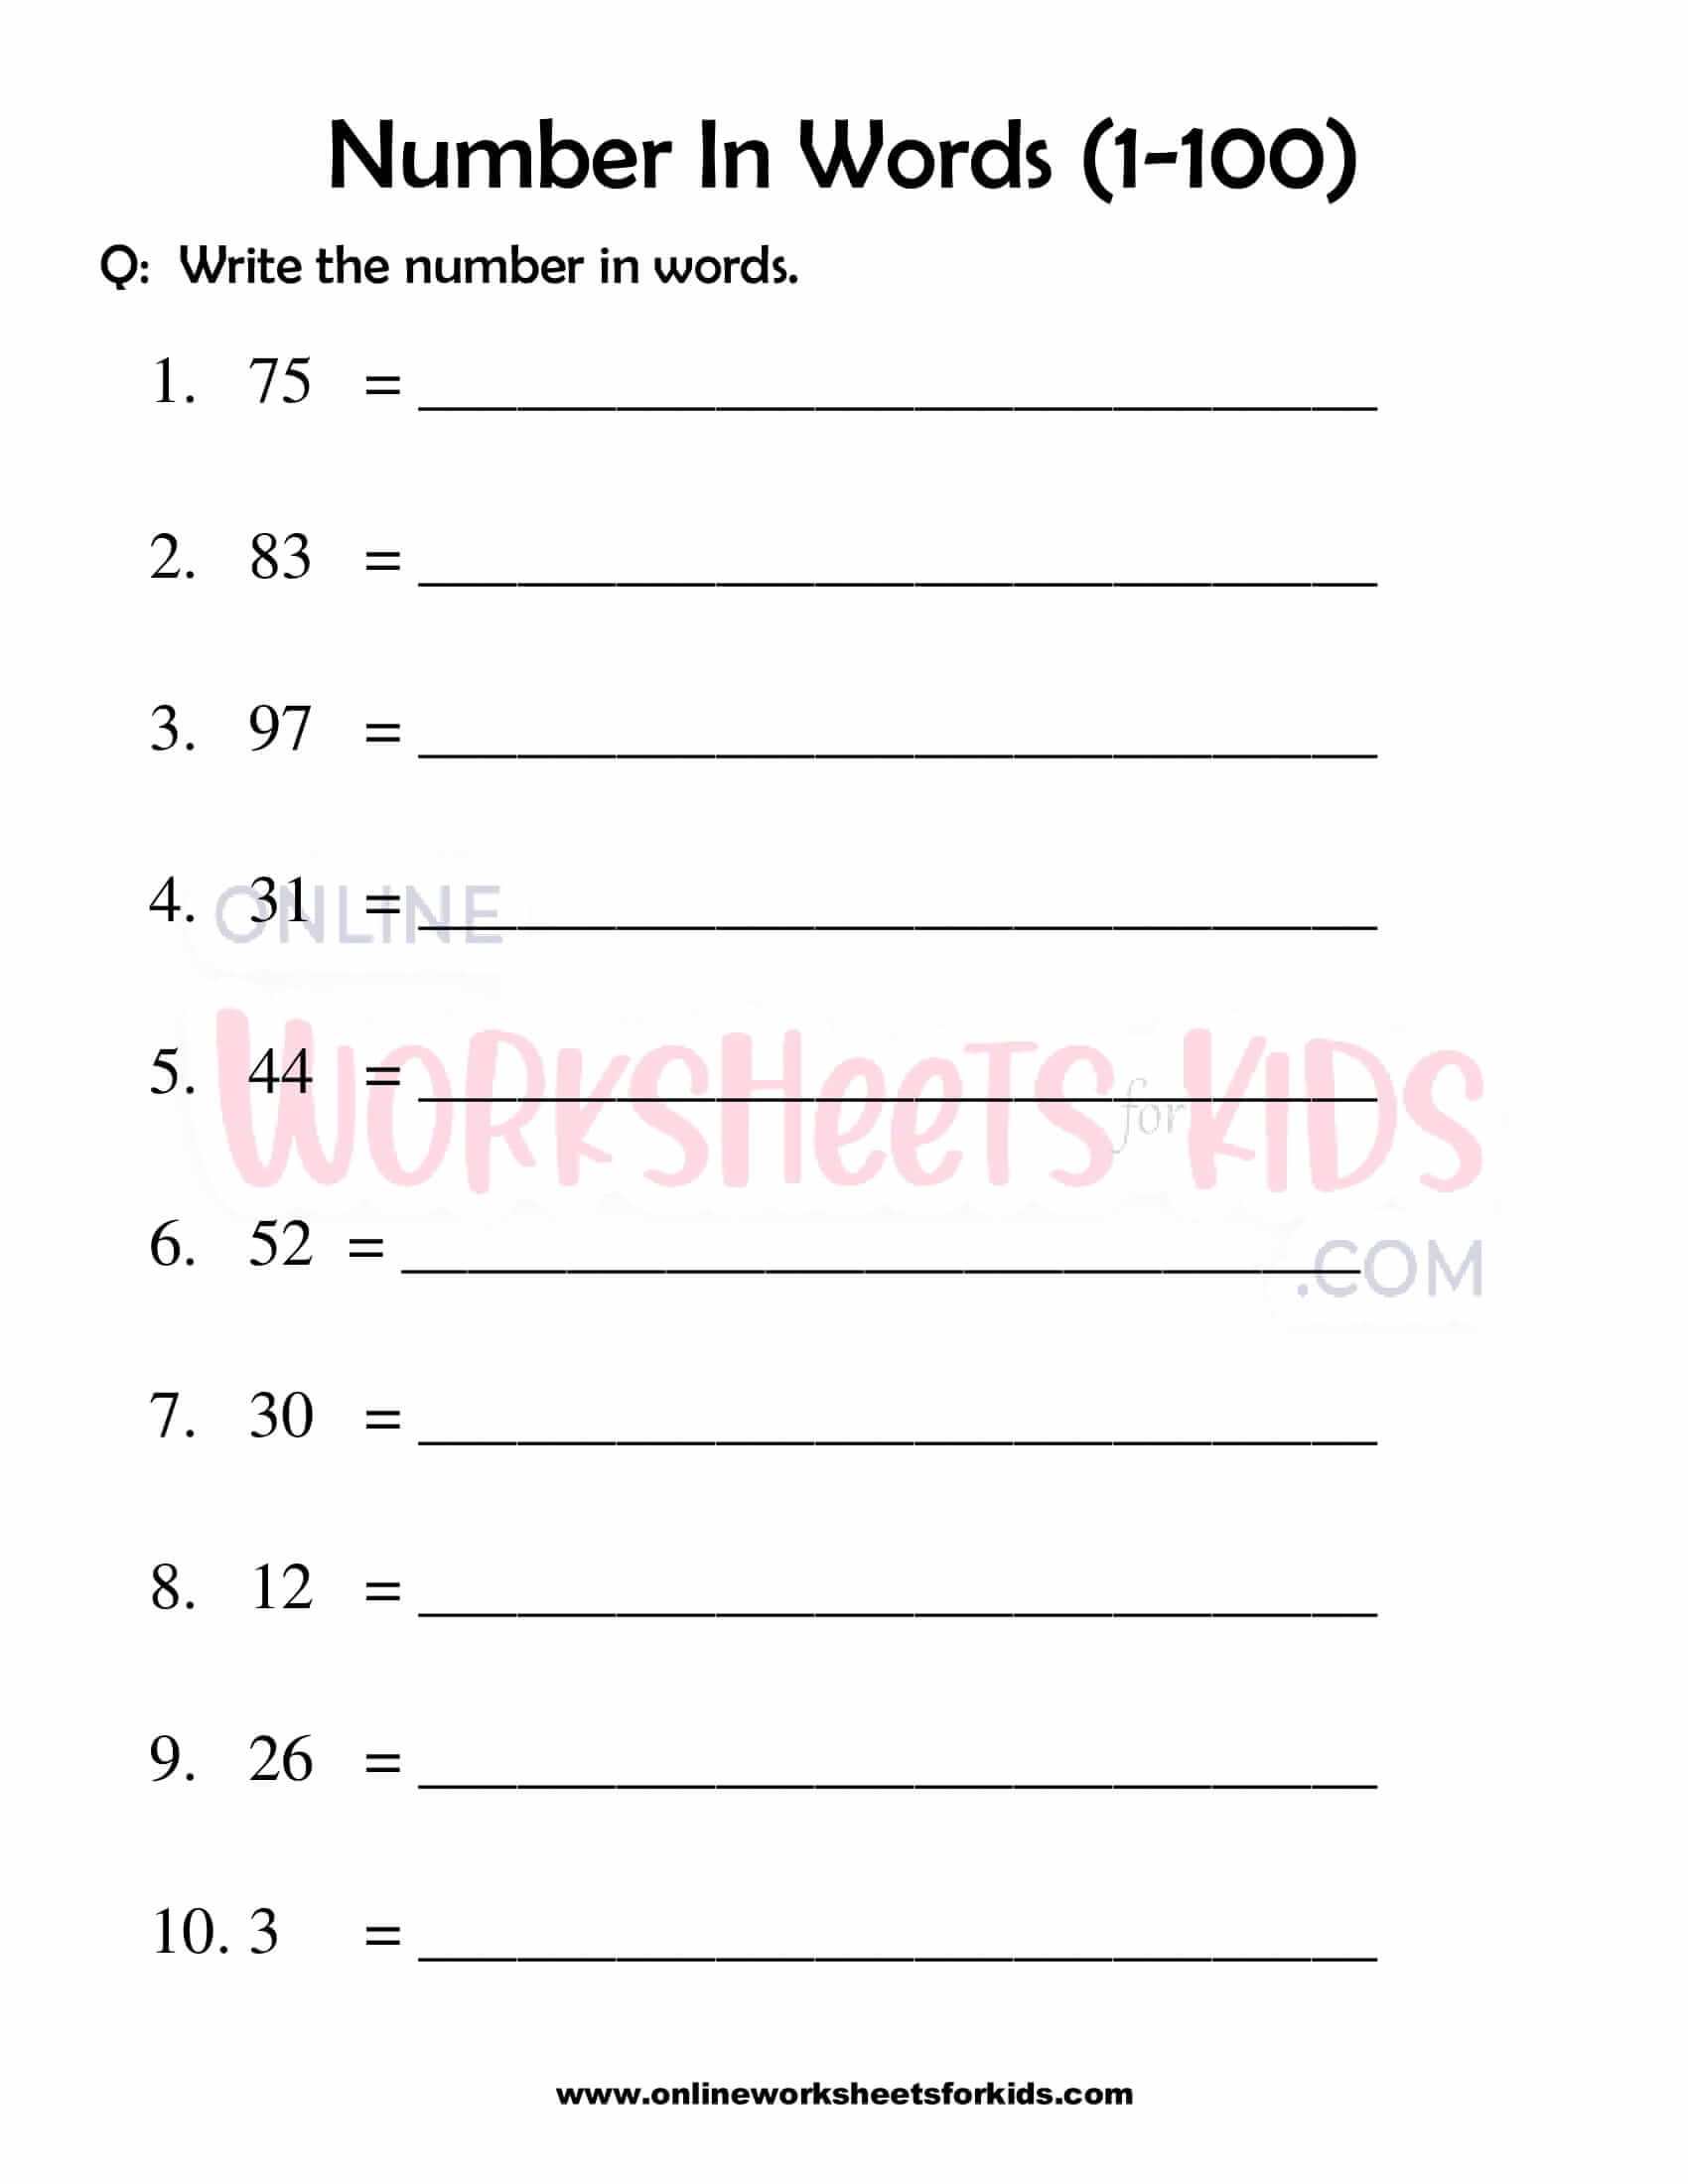 number-words-worksheet-1-100-for-grade-1-8